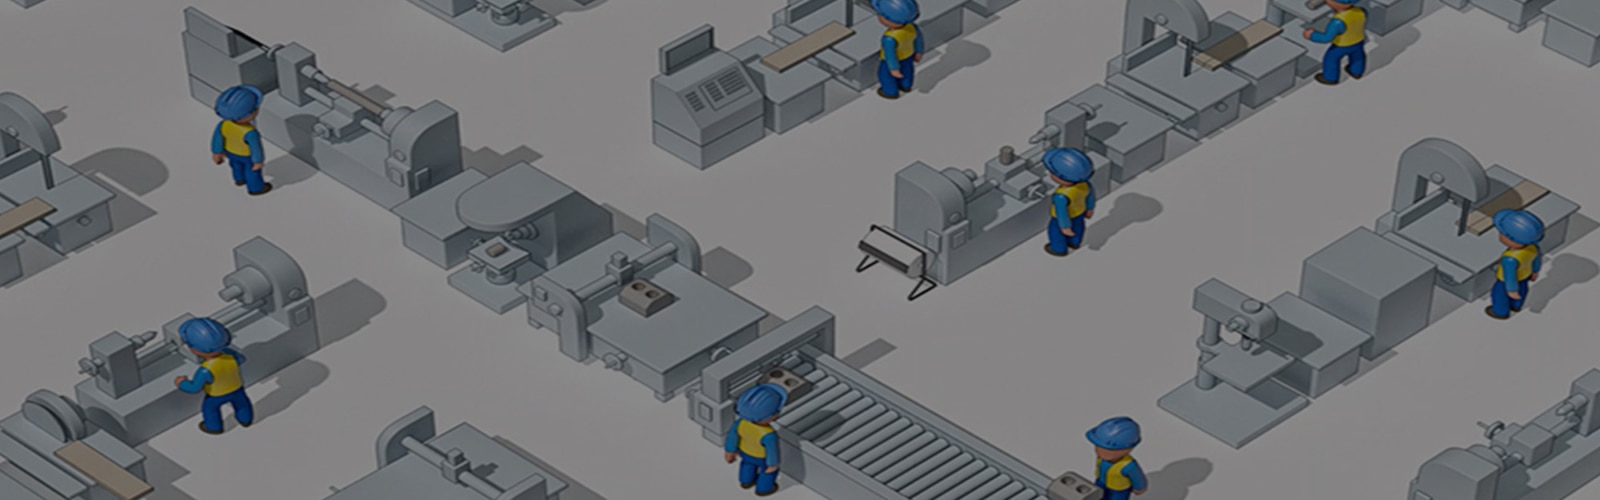 Εικονογραφημένη εικόνα εργαζομένων βιομηχανίας με κράνη ασφαλείας που απεικονίζονται από ψηλά σε ένα βιομηχανικό περιβάλλον. 